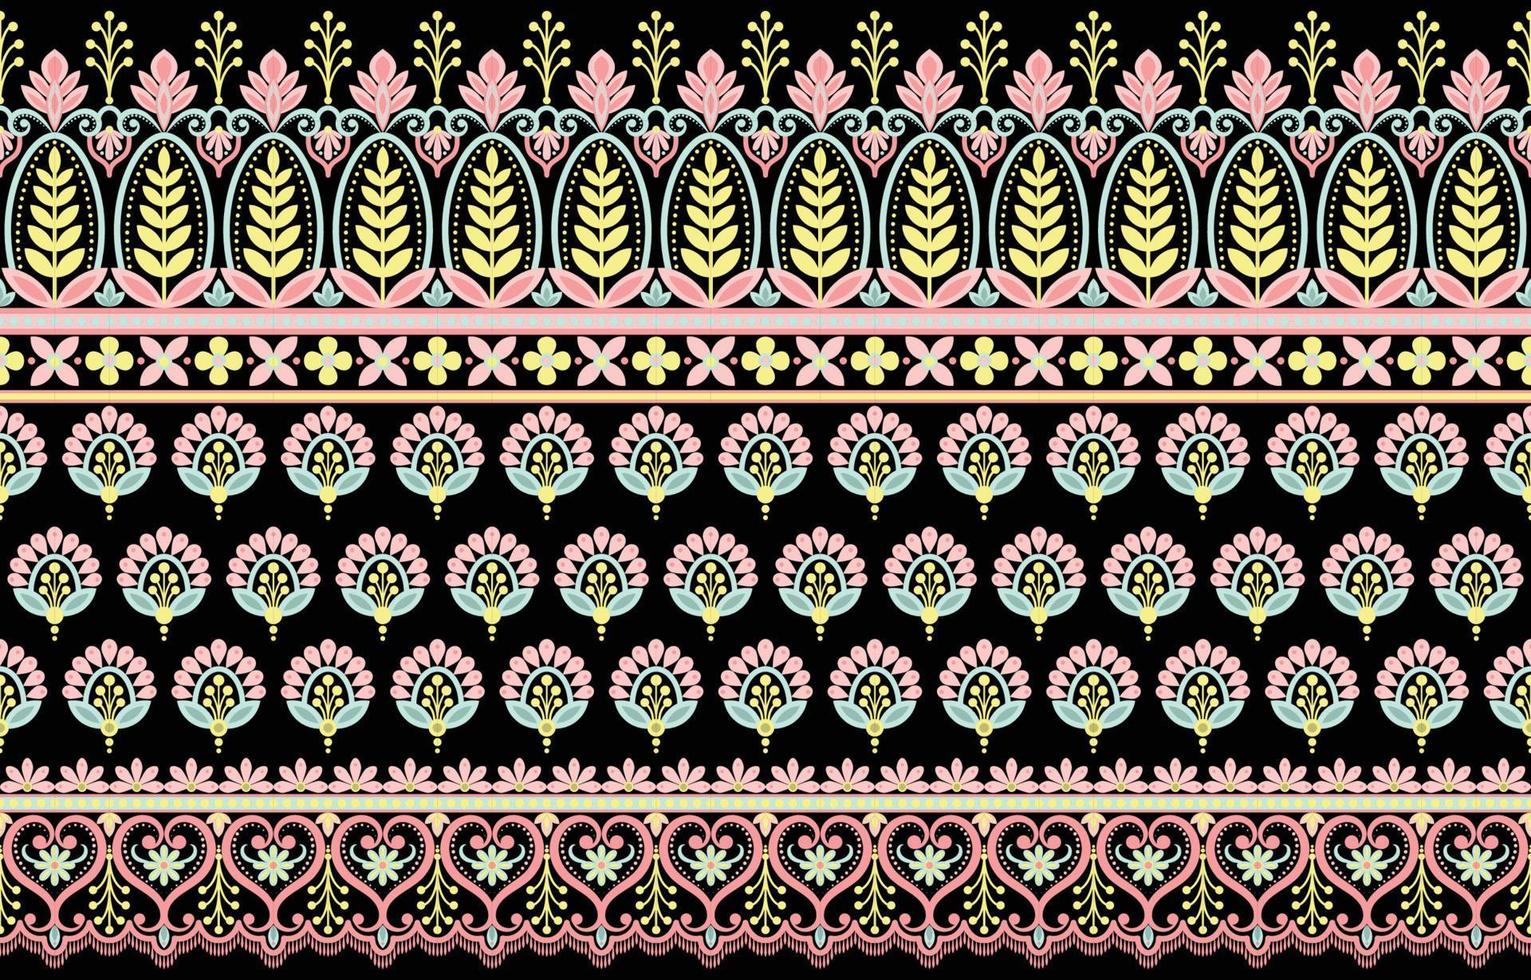 Nahtloses Vektormuster mit klassischem Vintage-Ornament. florales Design zum Bedrucken von Textilien oder Tapeten. vektor